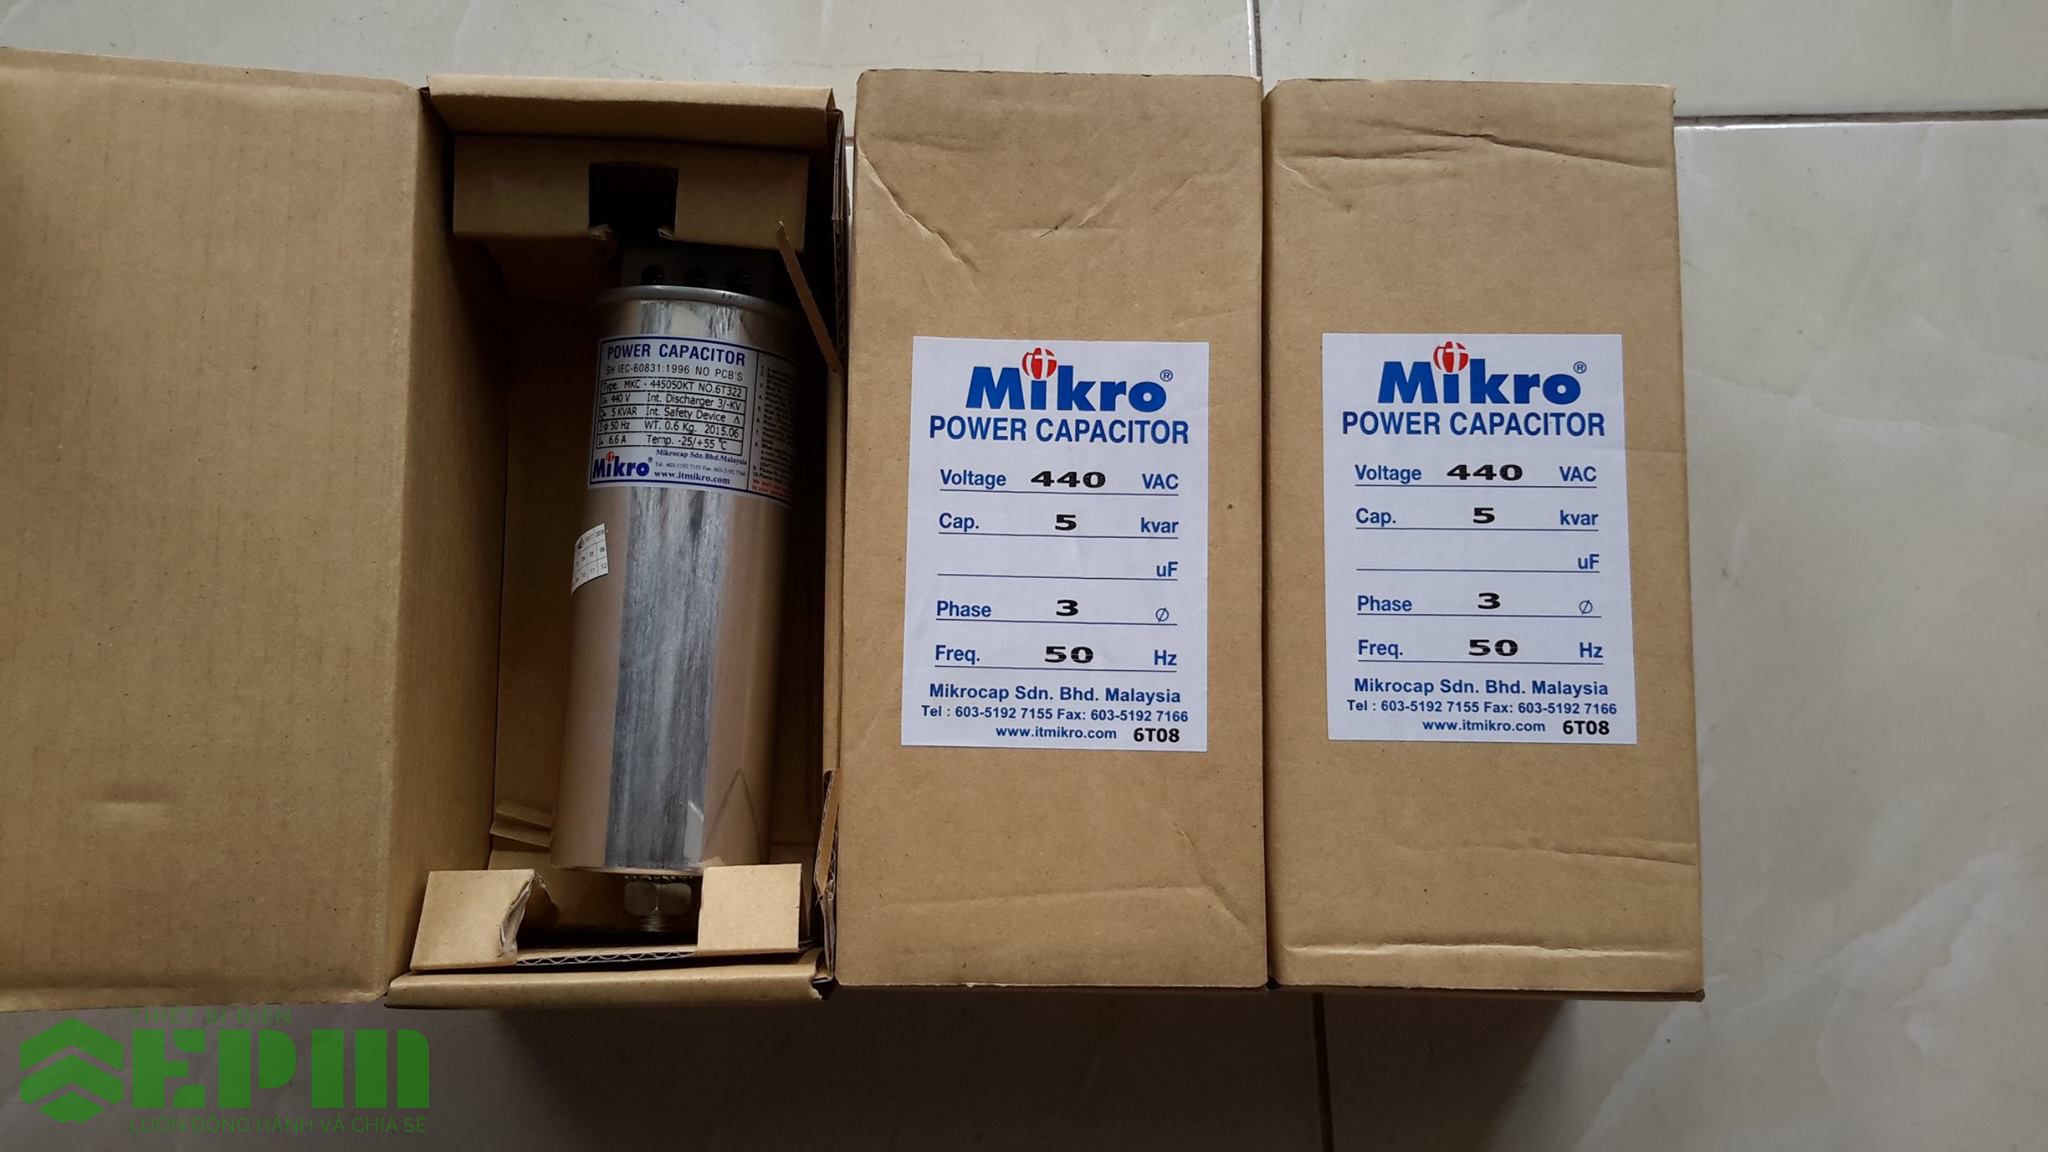 tụ bù Mikro nhập khẩu từ Malaysia.